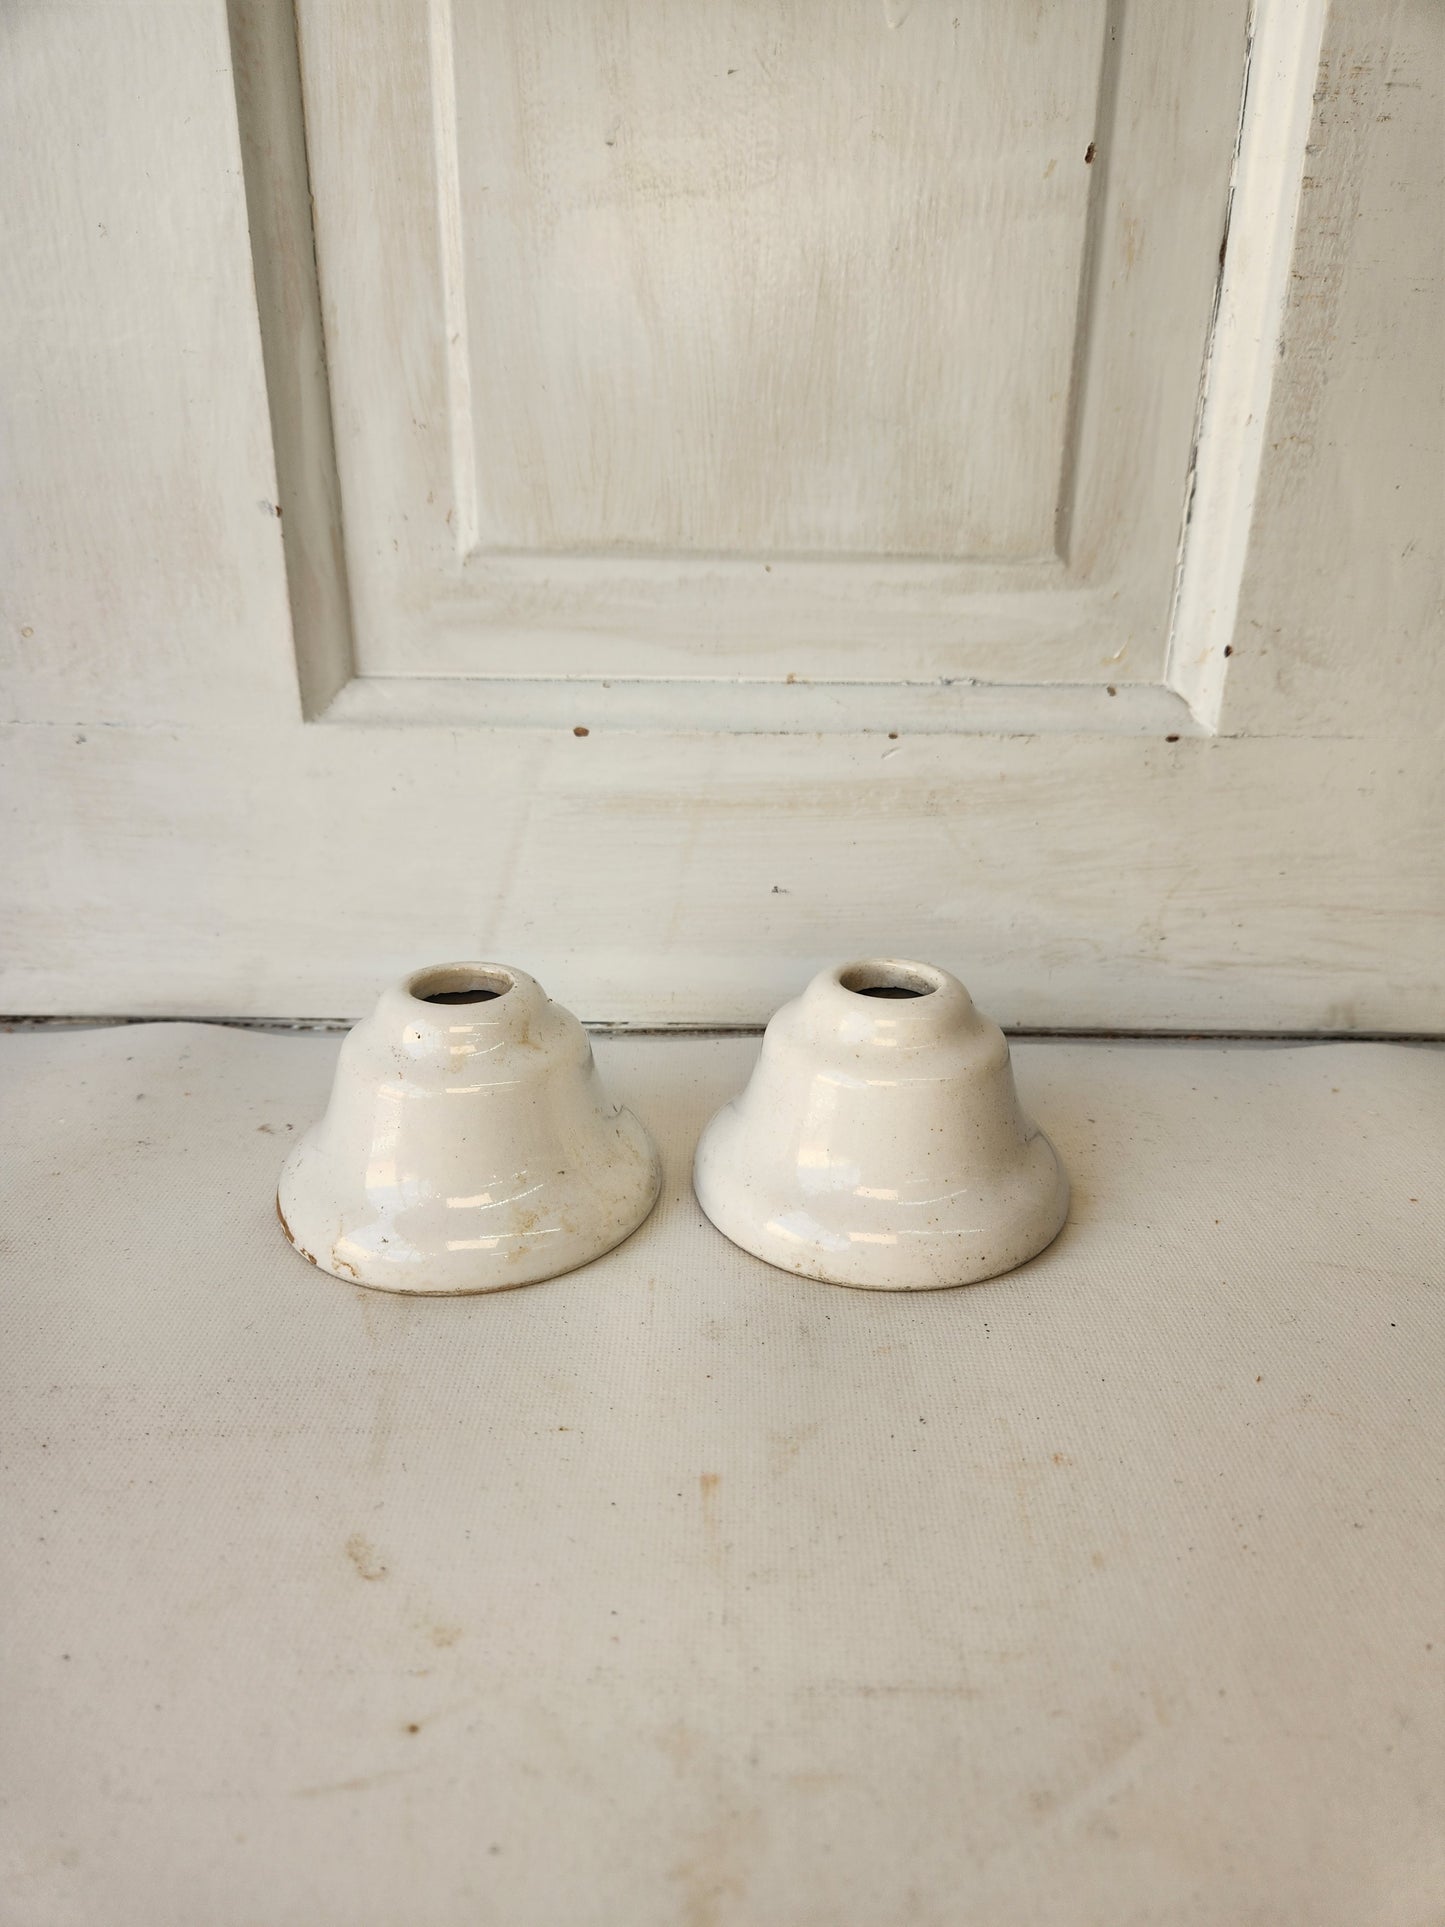 Antique Porcelain Plumbing Escutcheons, Vintage White Ceramic Pipe Escutcheons 113003